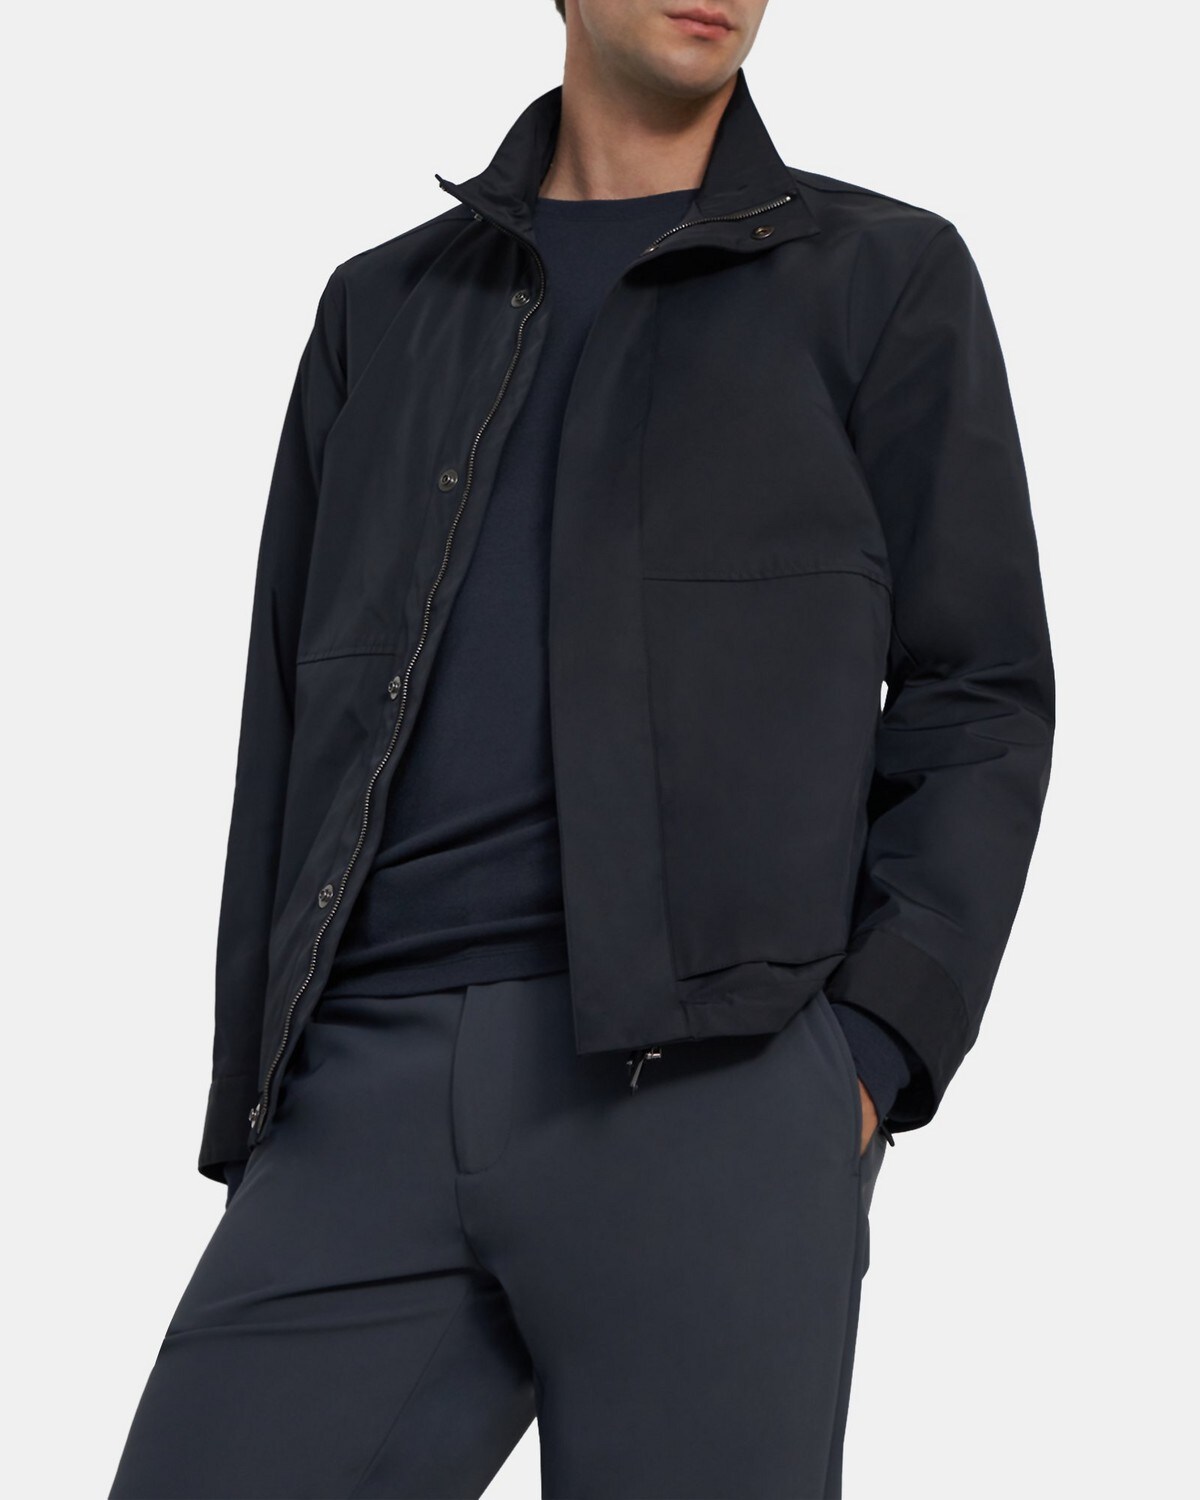 띠어리 맨 재킷 Theory Stand-Collar Jacket in Stretch Melton Wool,INK